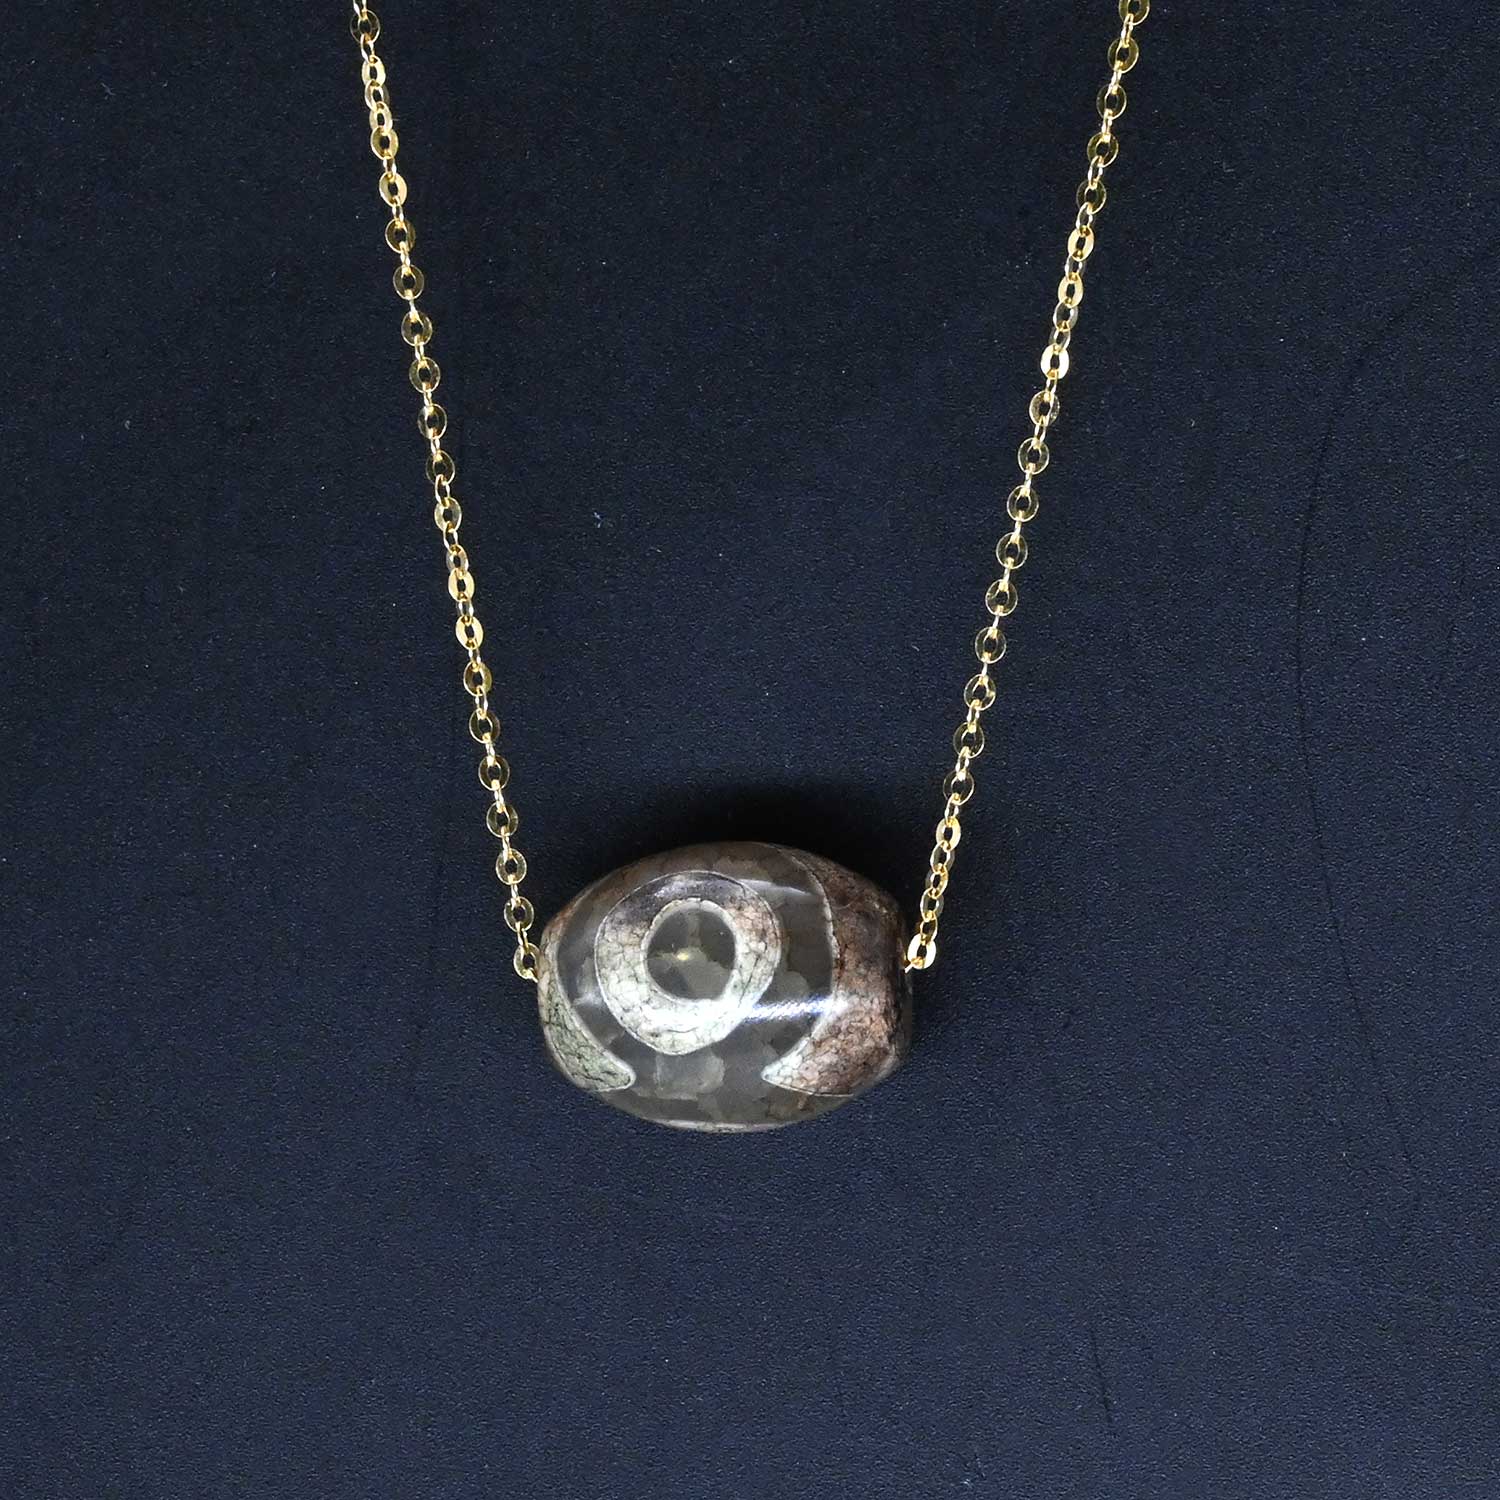 A Near Eastern Eye Agate Bead set as a pendant, ca. 14th century BCE